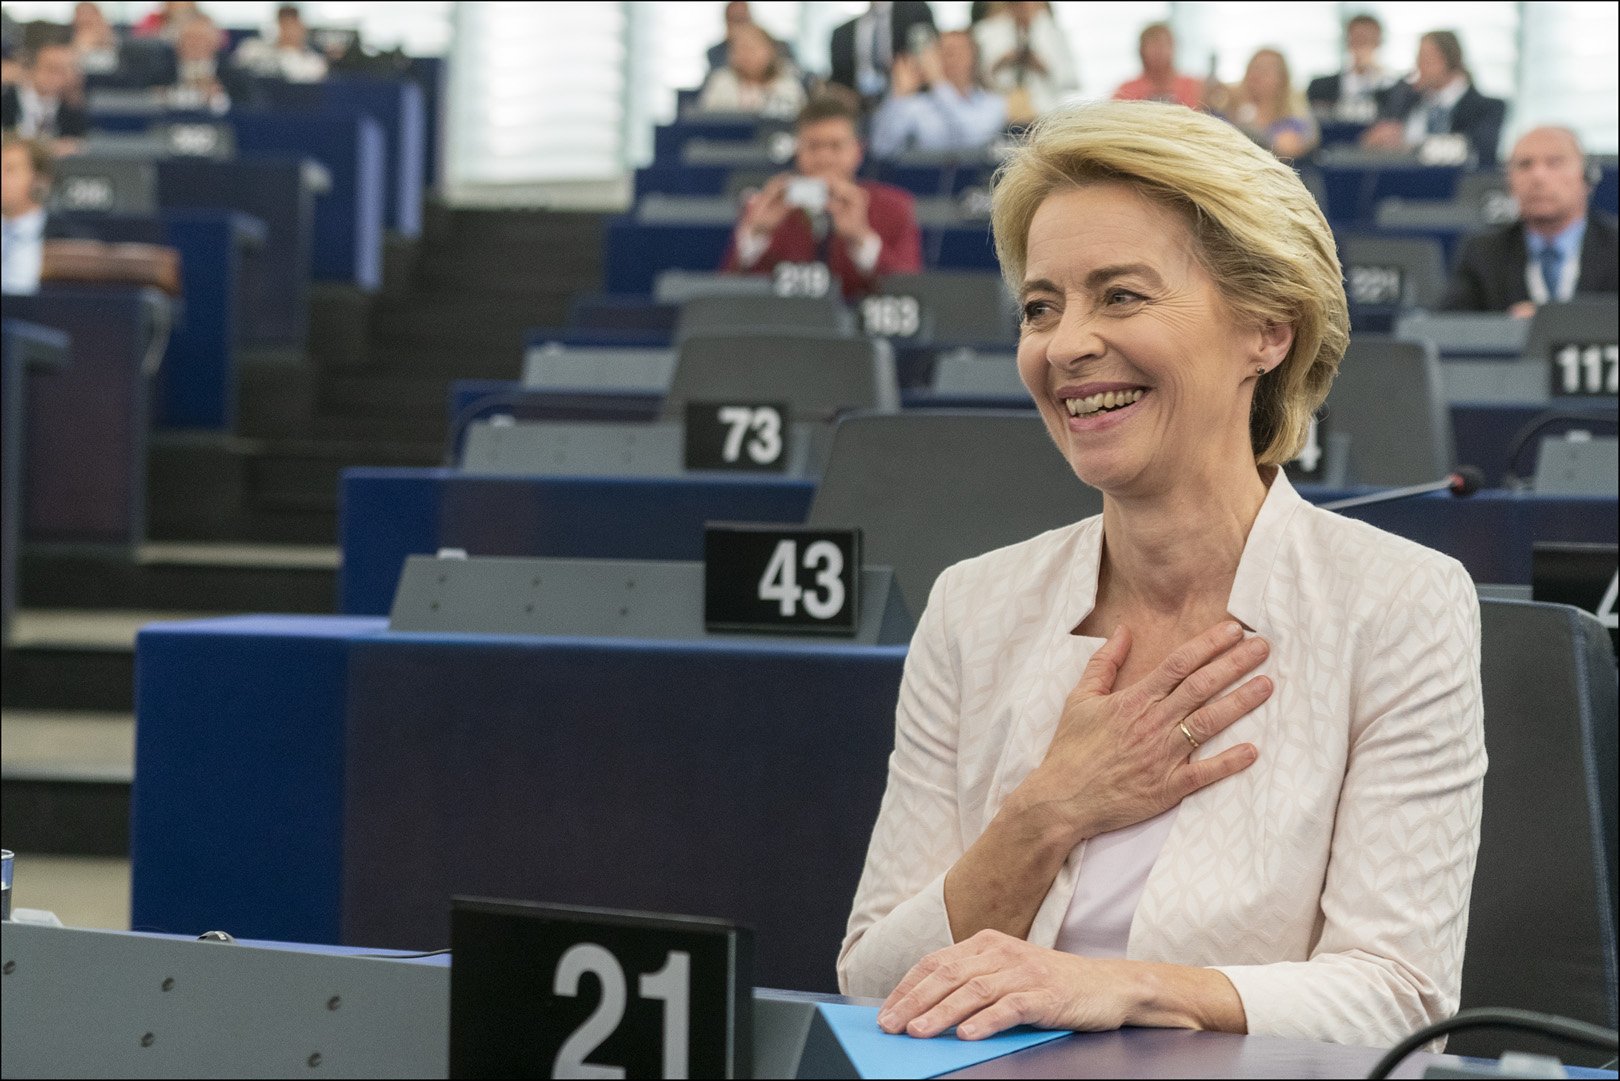 Eureopan Parliament elected Ursula von der Leyen